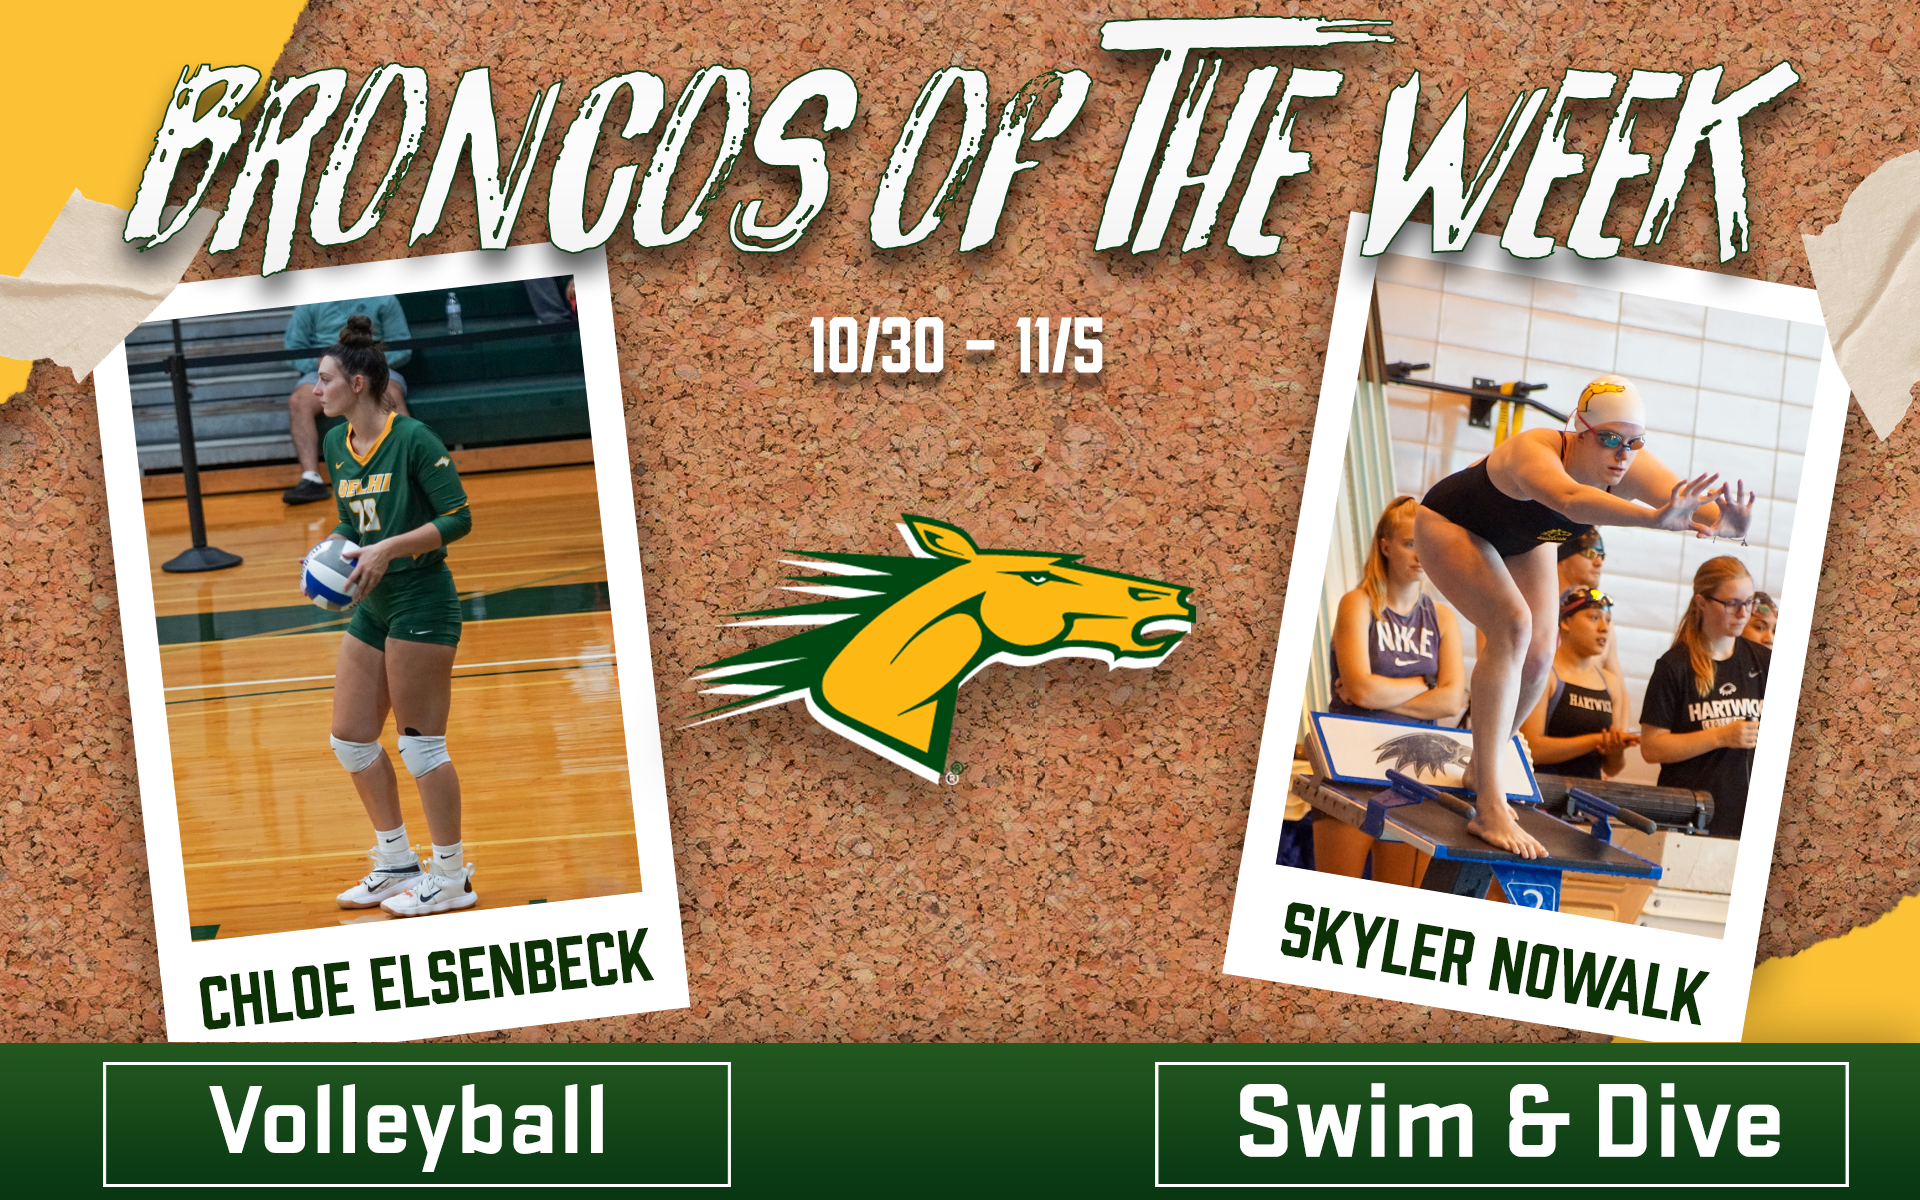 Broncos of the Week #10 Chloe Elsenbeck, Skyler Nowalk (11/6)